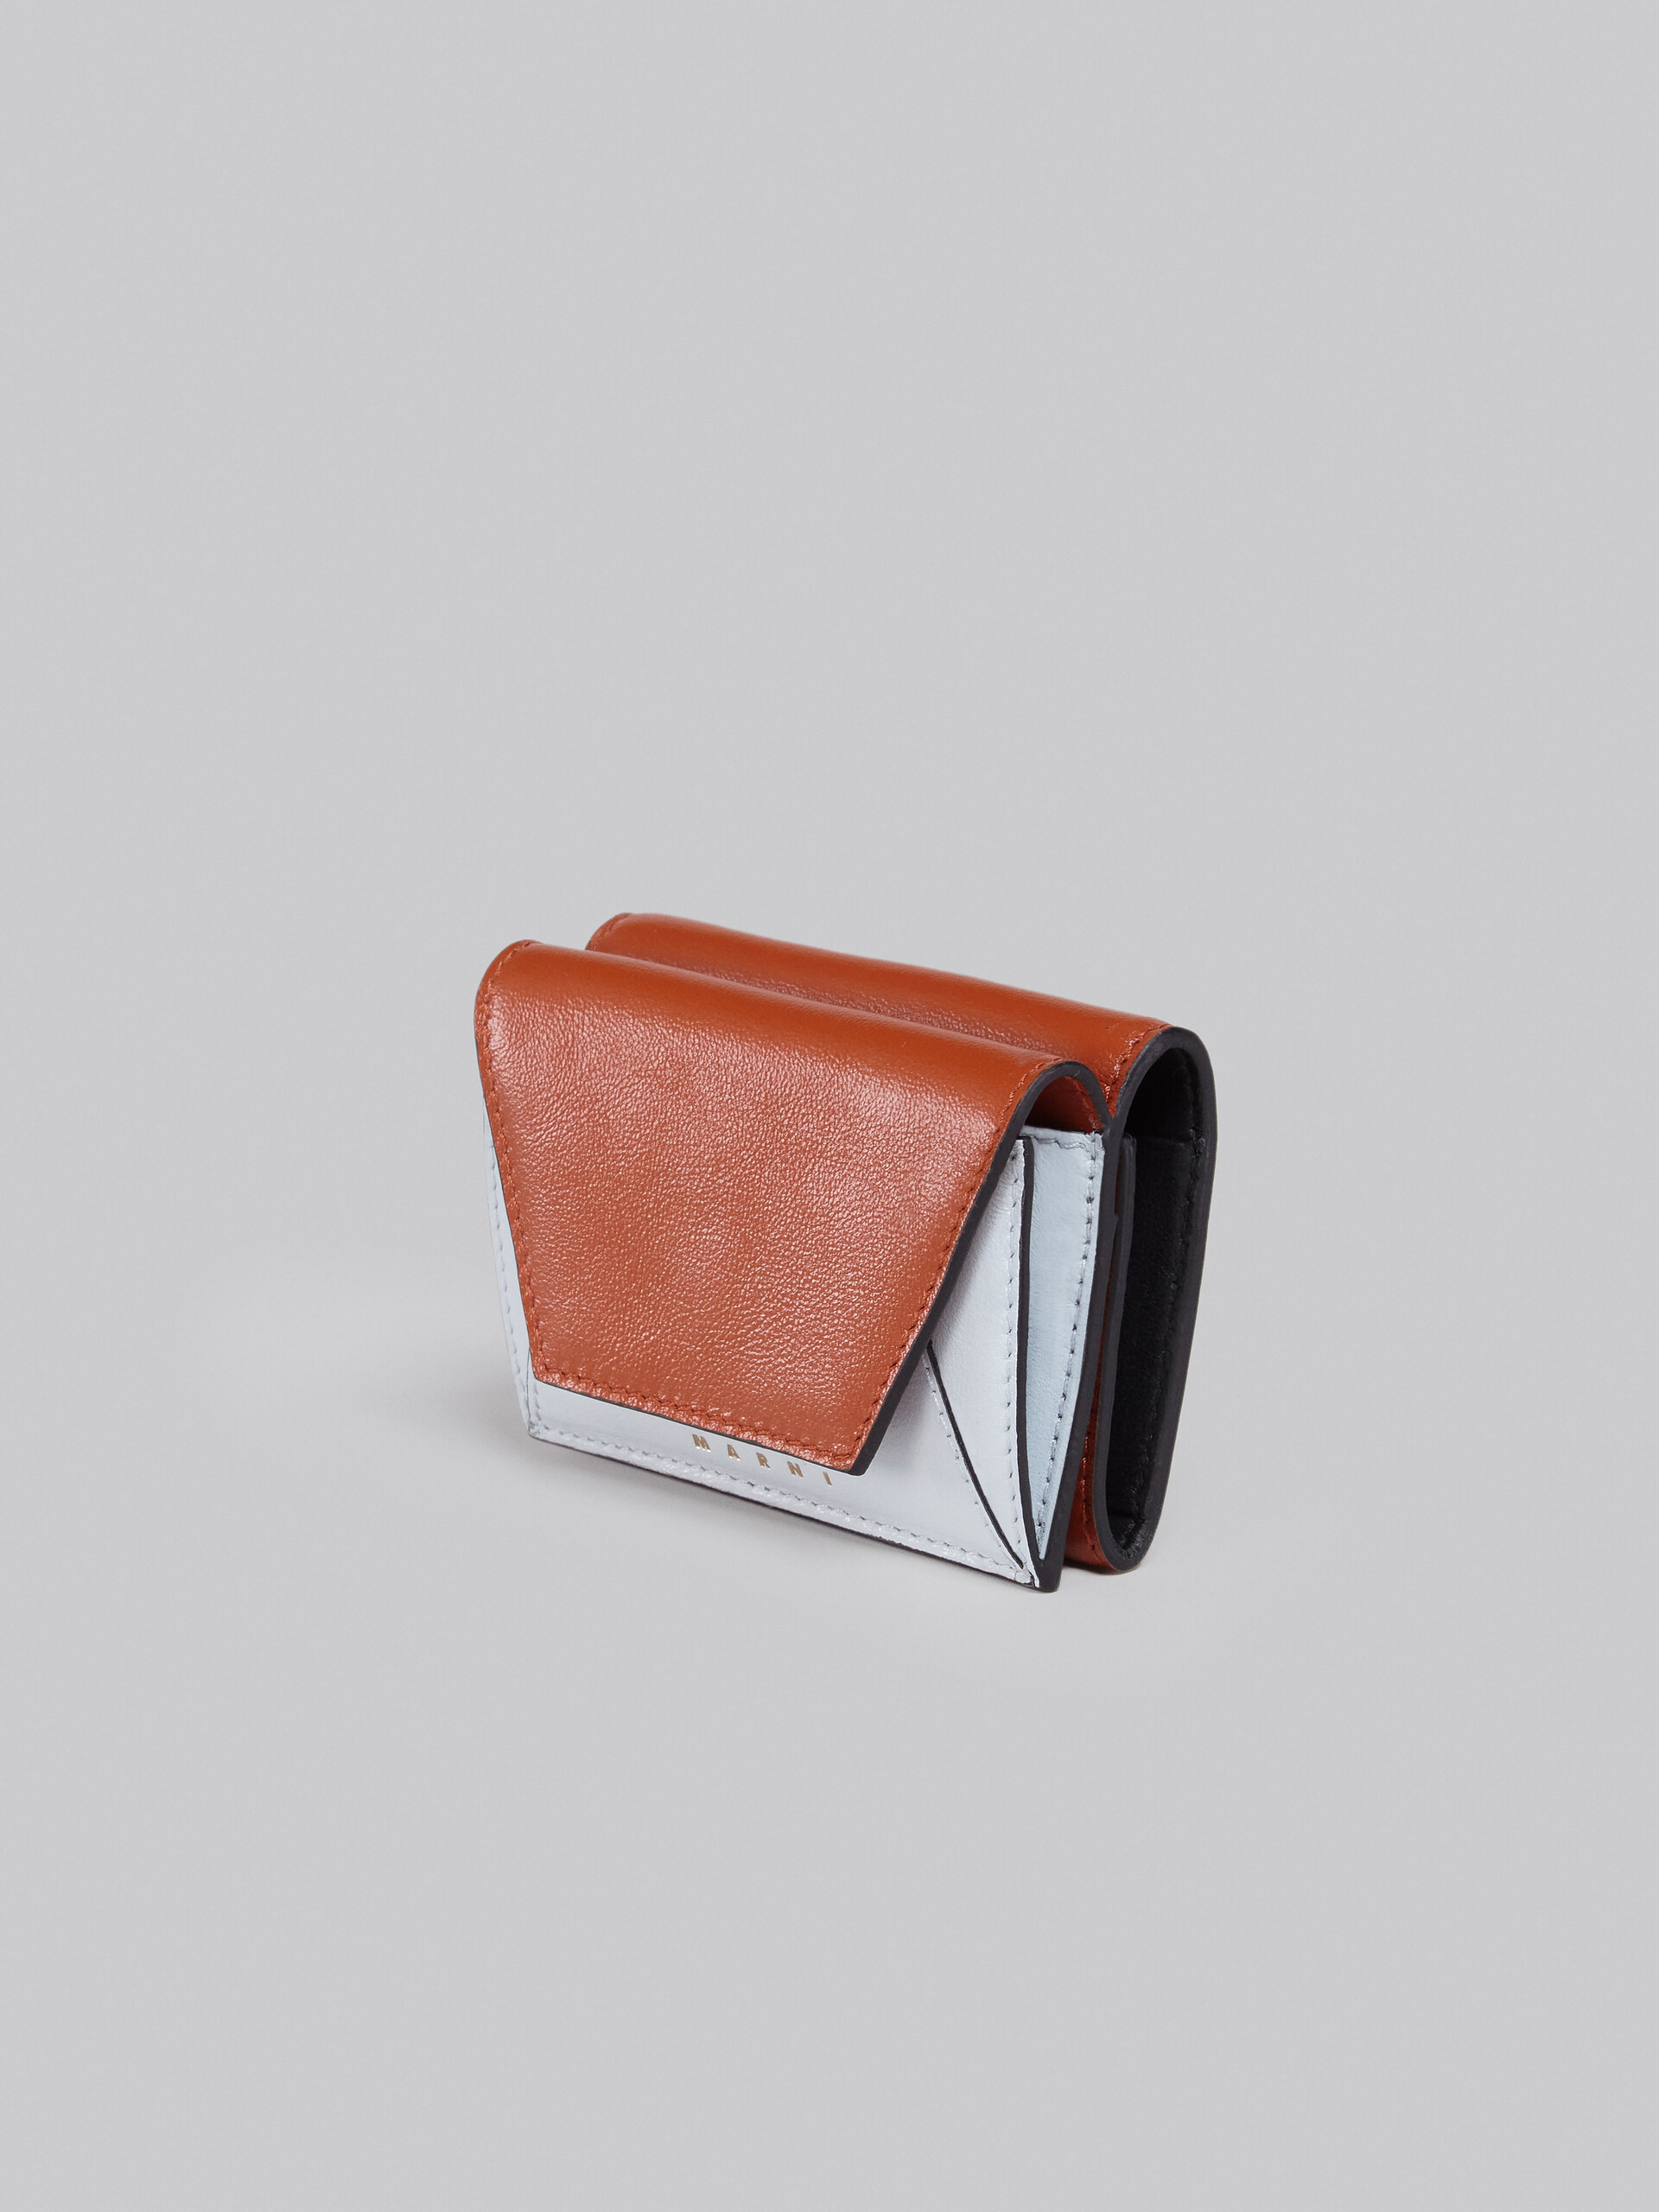 グレー、ブラックレザー製三つ折りウォレット - 財布 - Image 4